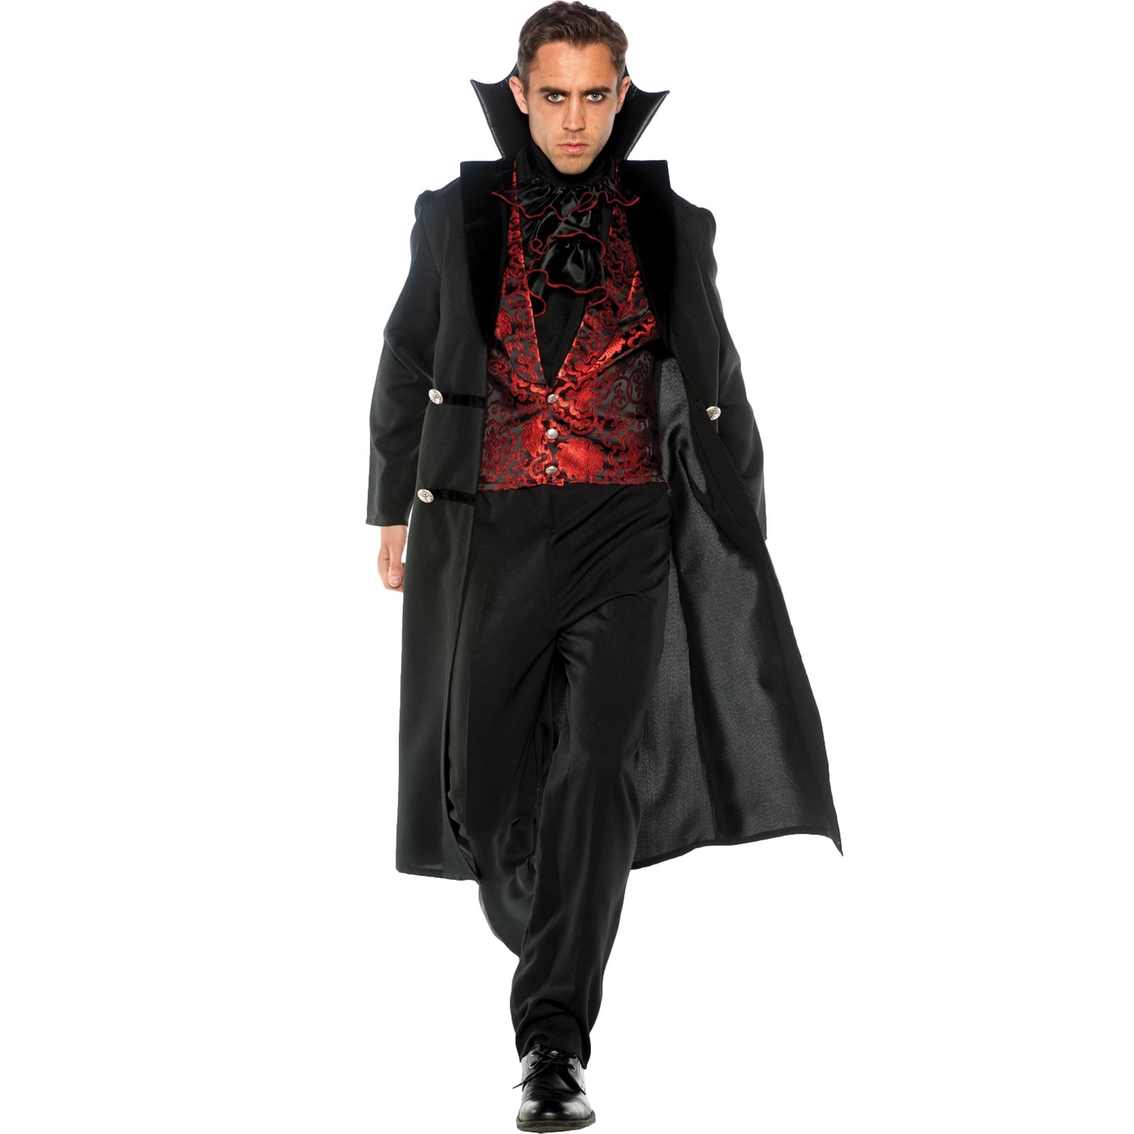 Morris Costumes Men's Gothic Vampire Adult Costume | Men's Costumes ...